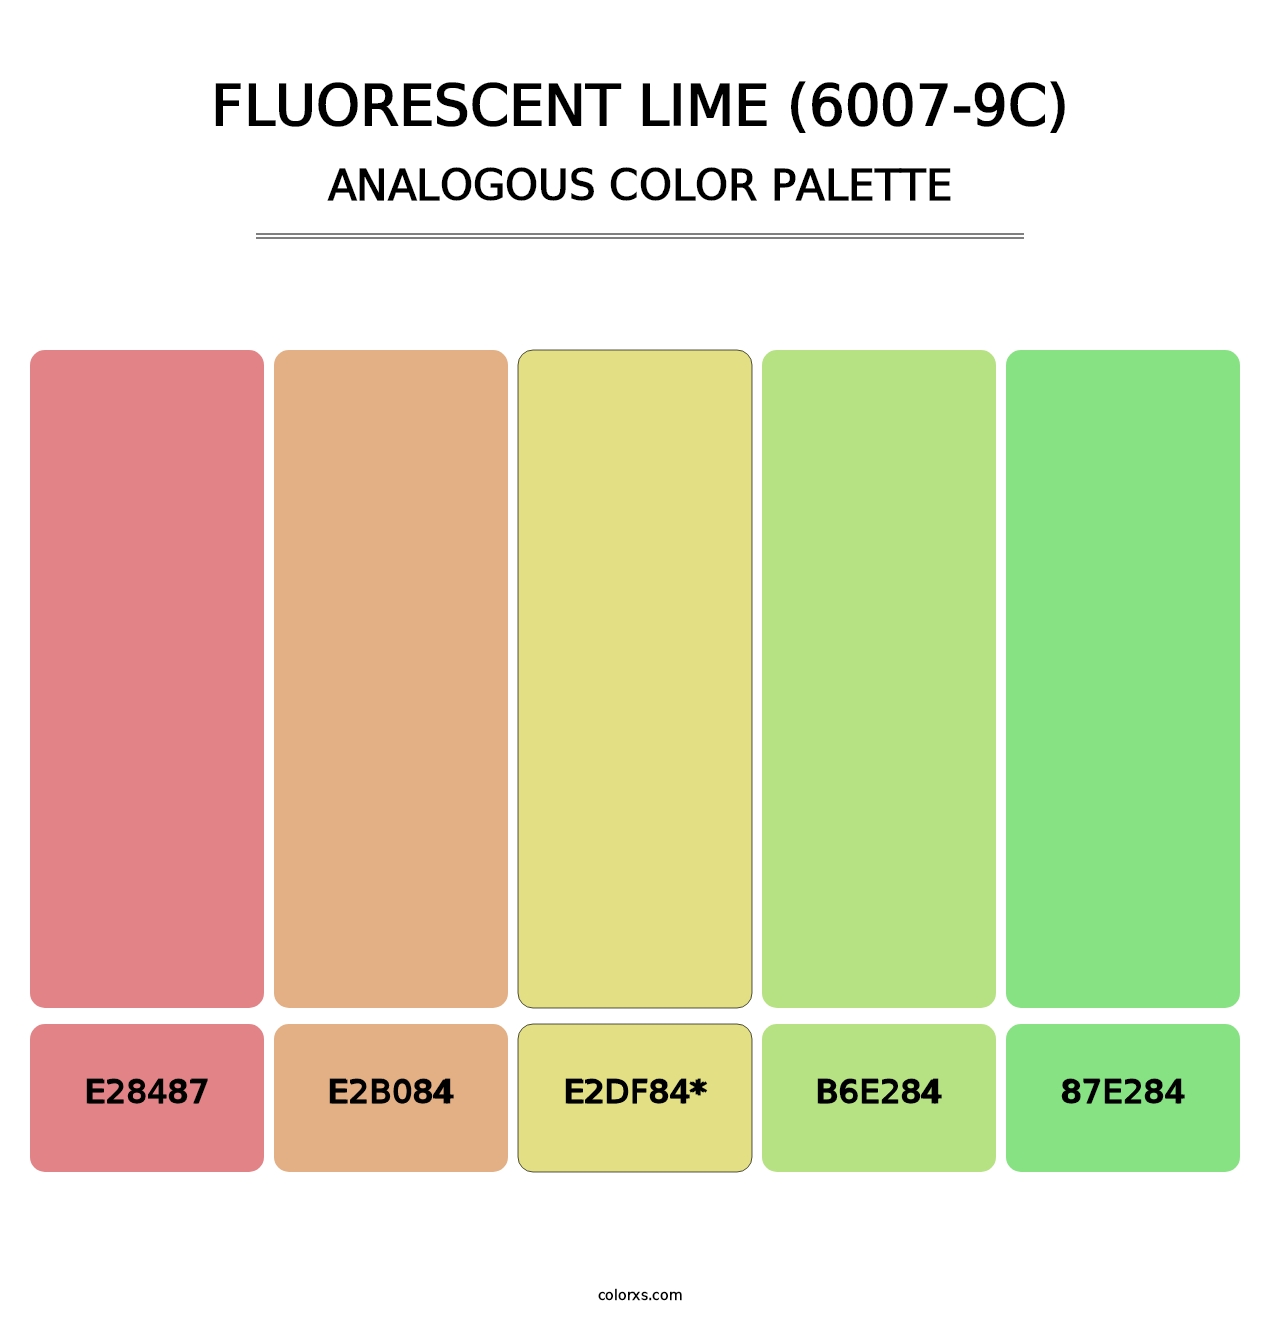 Fluorescent Lime (6007-9C) - Analogous Color Palette